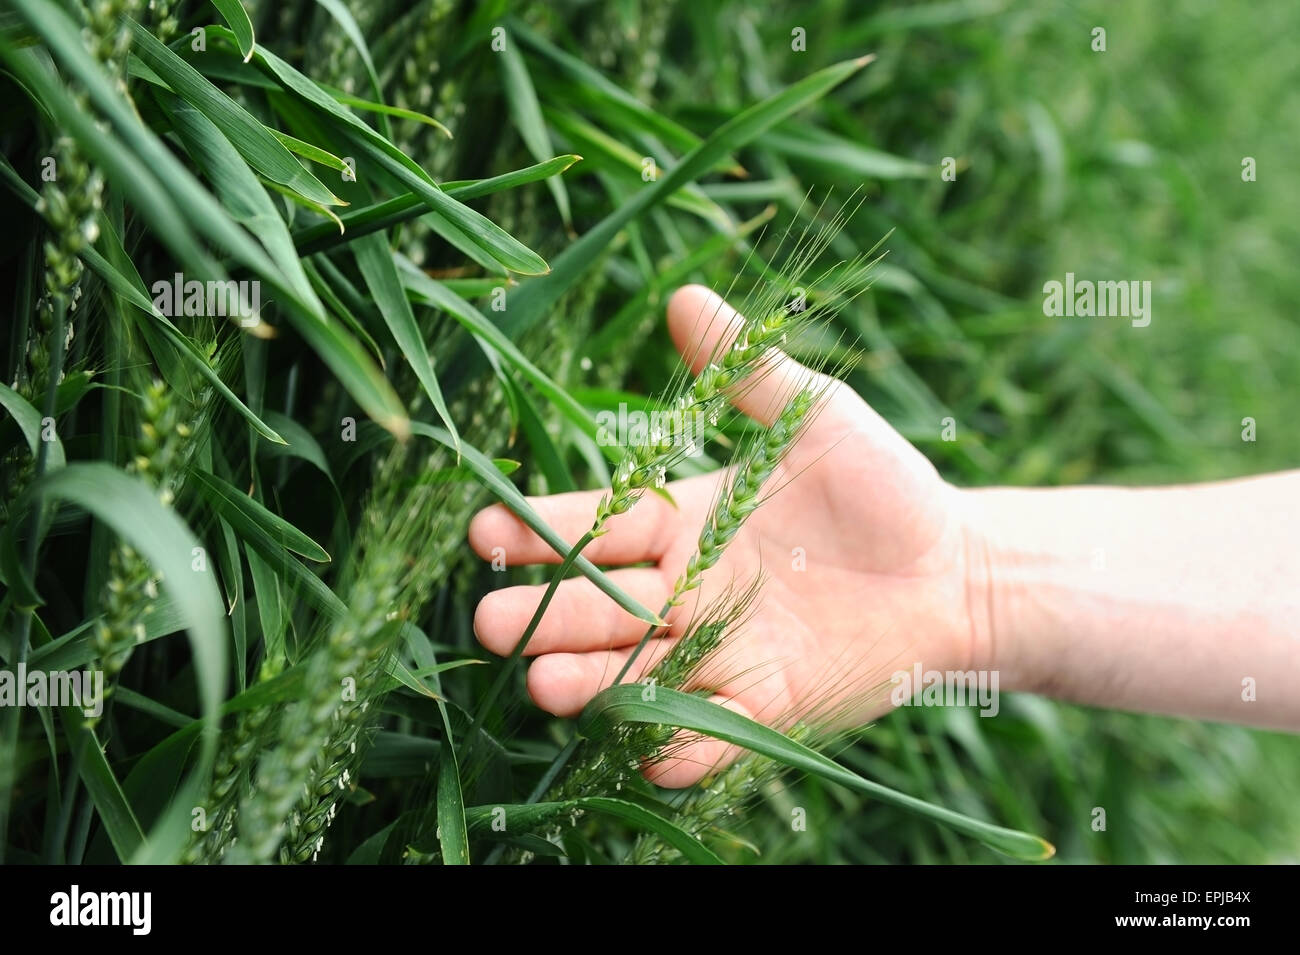 Détail tourné avec la main d'un homme tenant un épi de blé dans un champ vert Banque D'Images